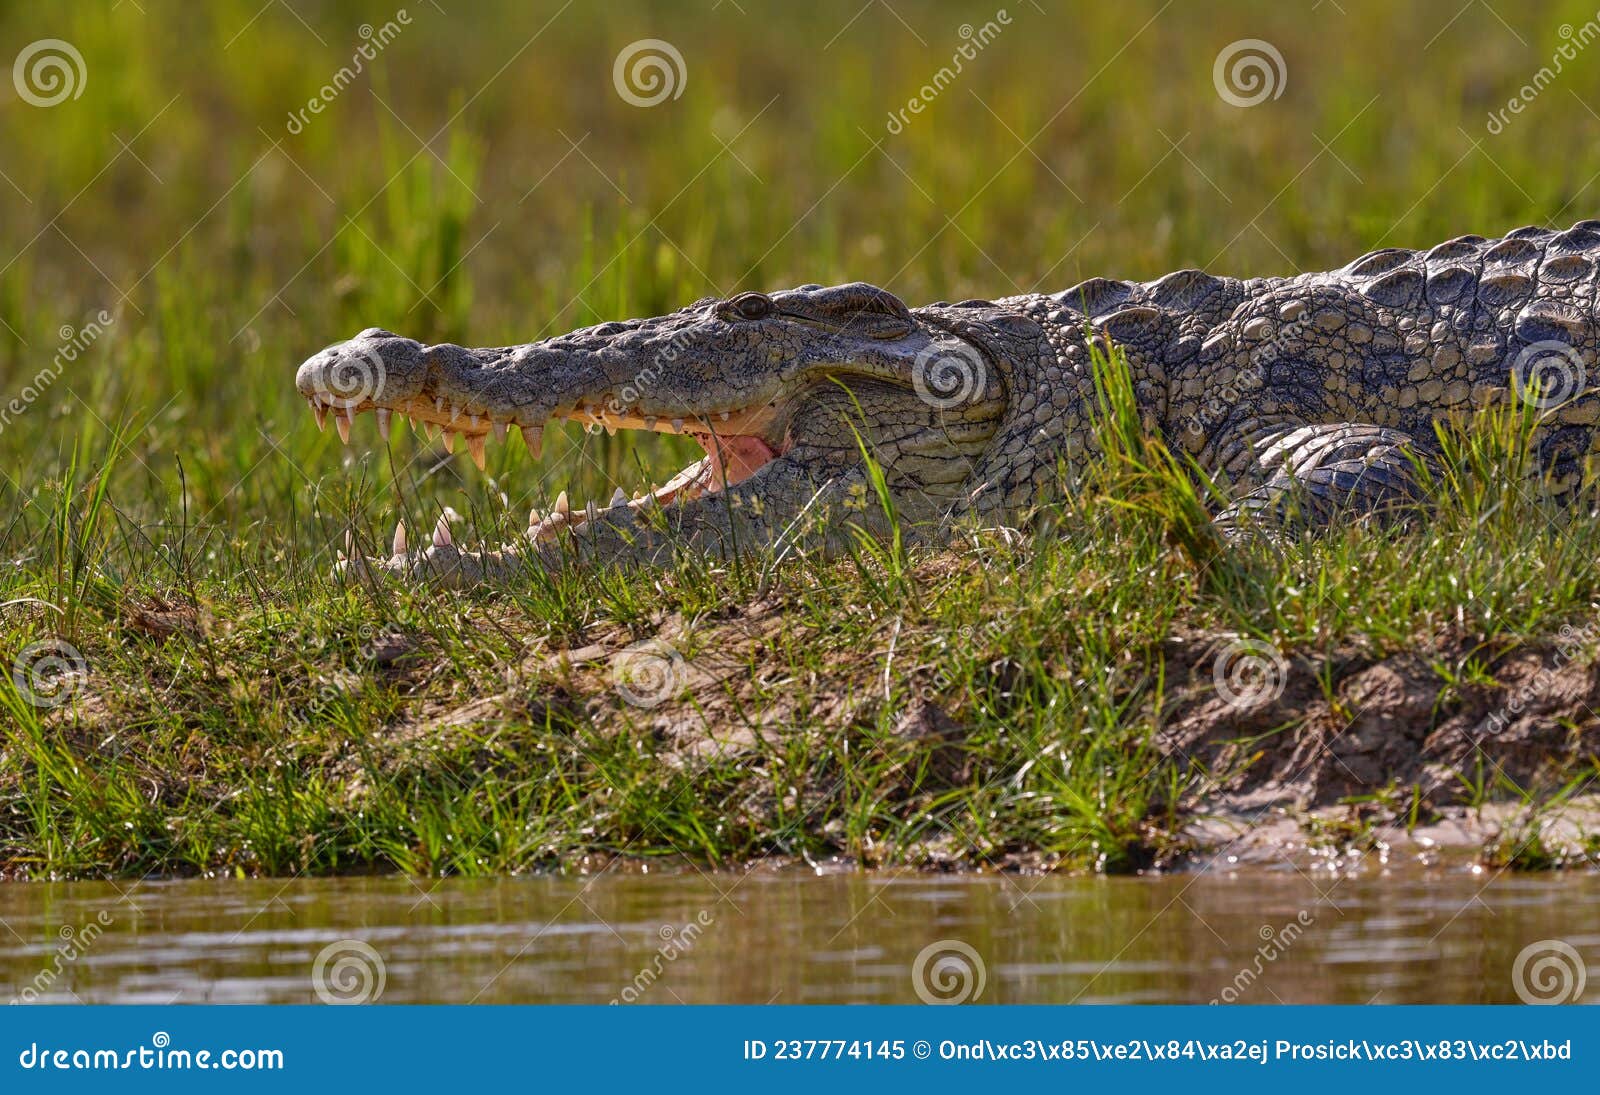 佛罗里达的尼罗鳄生物入侵 - 哔哩哔哩